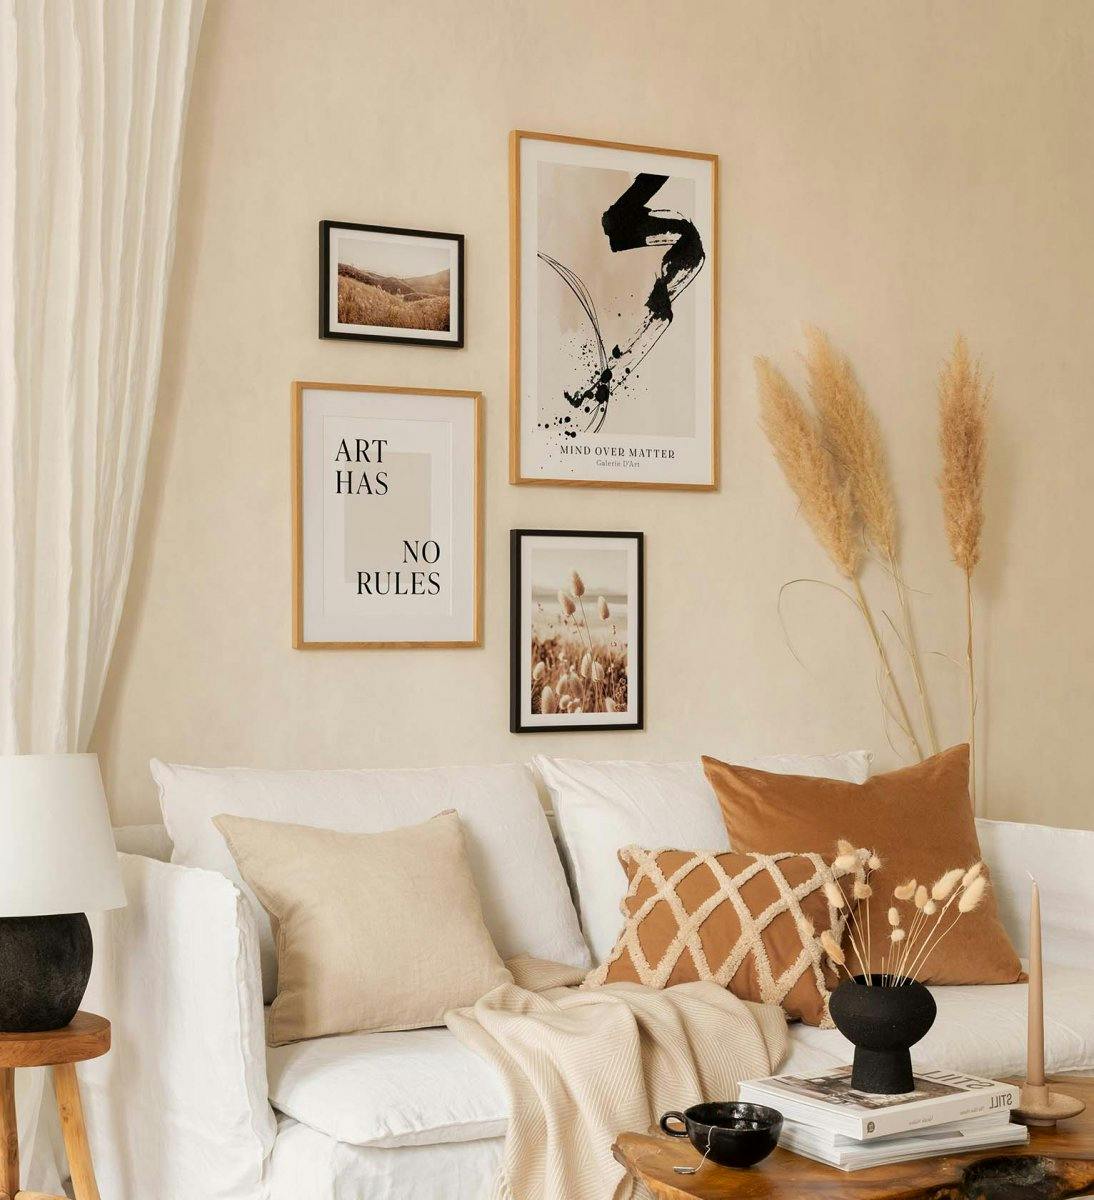 En trendig tavelvägg med fotografier och typografi kombinerat i lugna färger till vardagsrummet